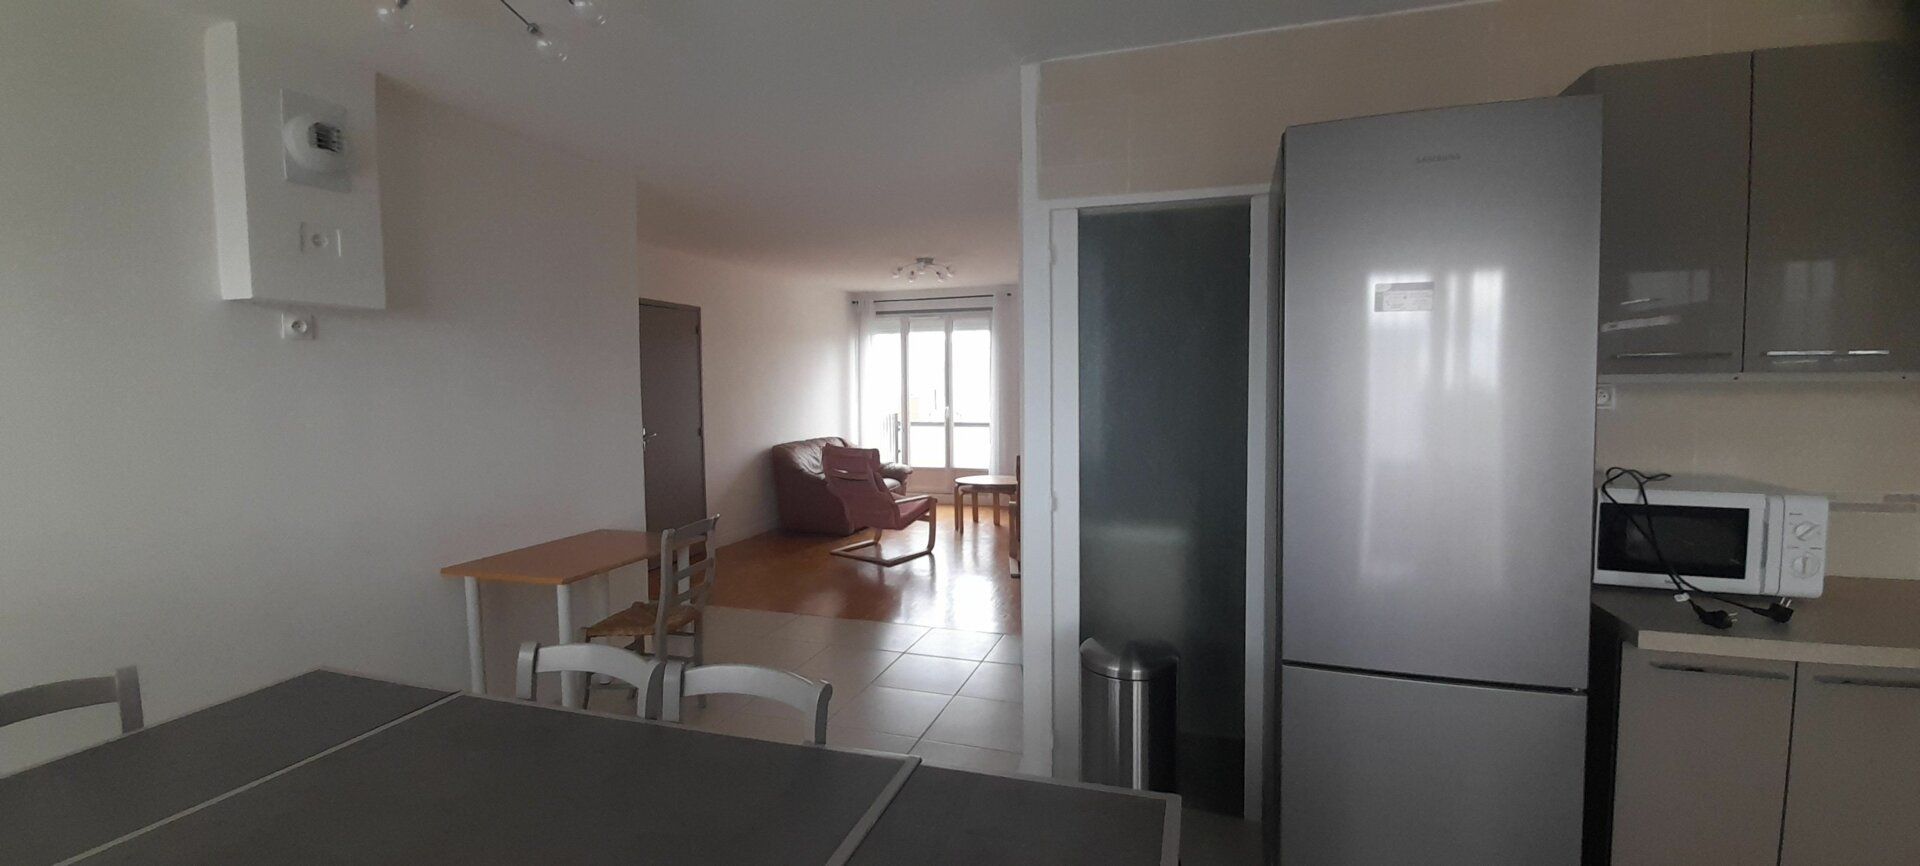 Appartement à vendre 3 67.05m2 à Bourg-en-Bresse vignette-2